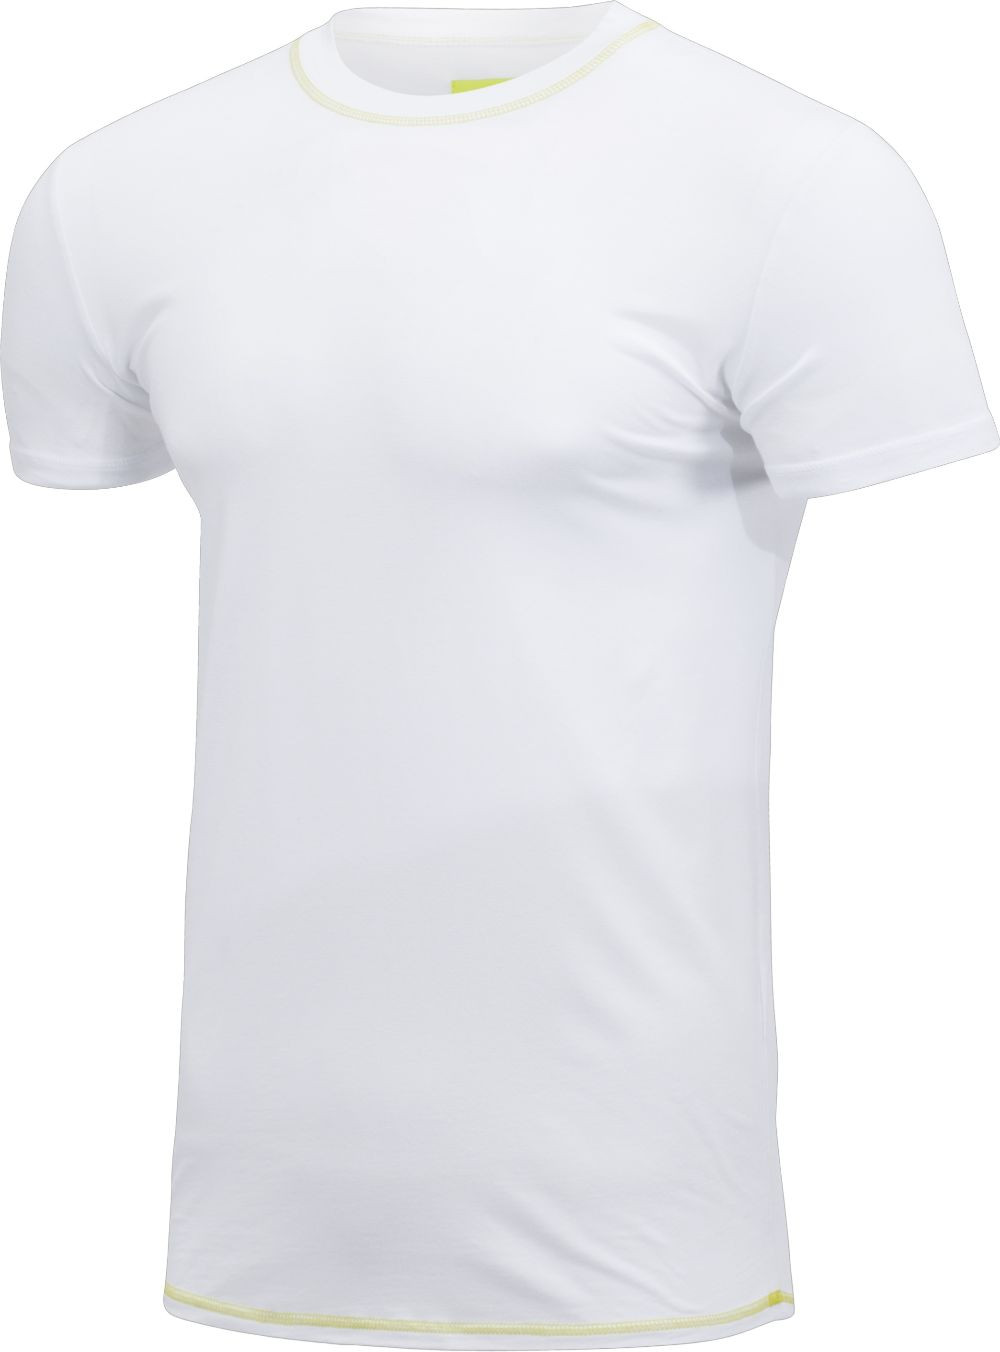 Visbatex T-Shirt Antibakteriell Silver+ Kurzarm – weiß